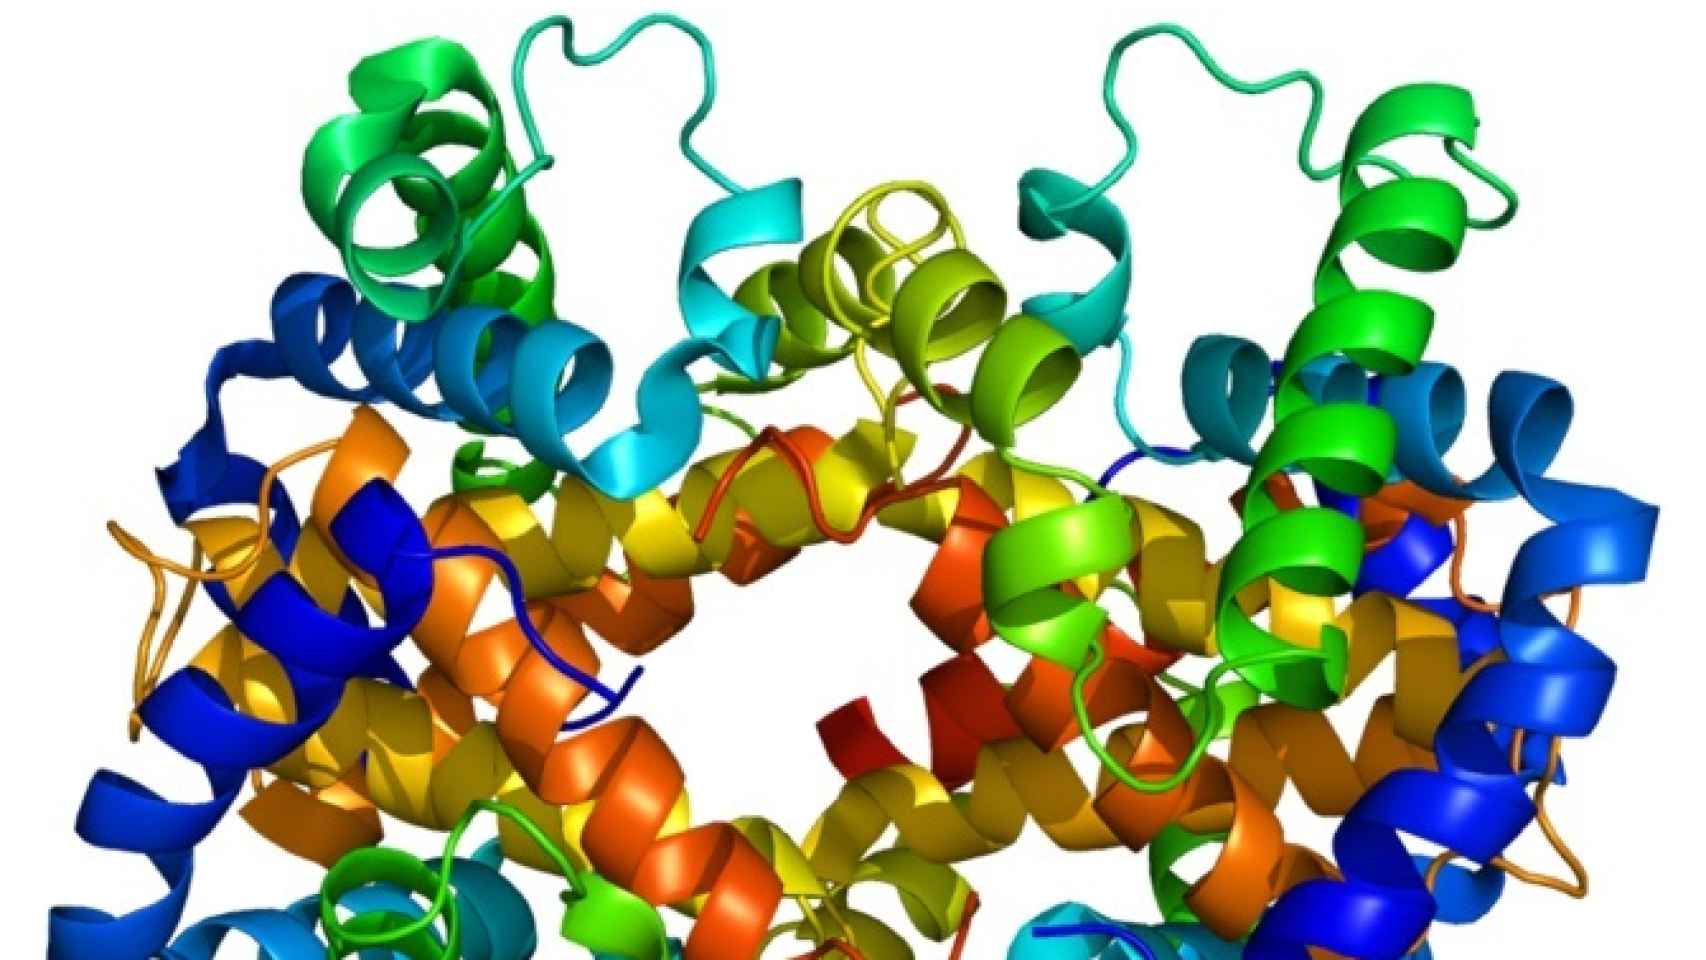 Predecir el comportamiento de las proteínas de diseño abre nuevas posibilidades para su uso.